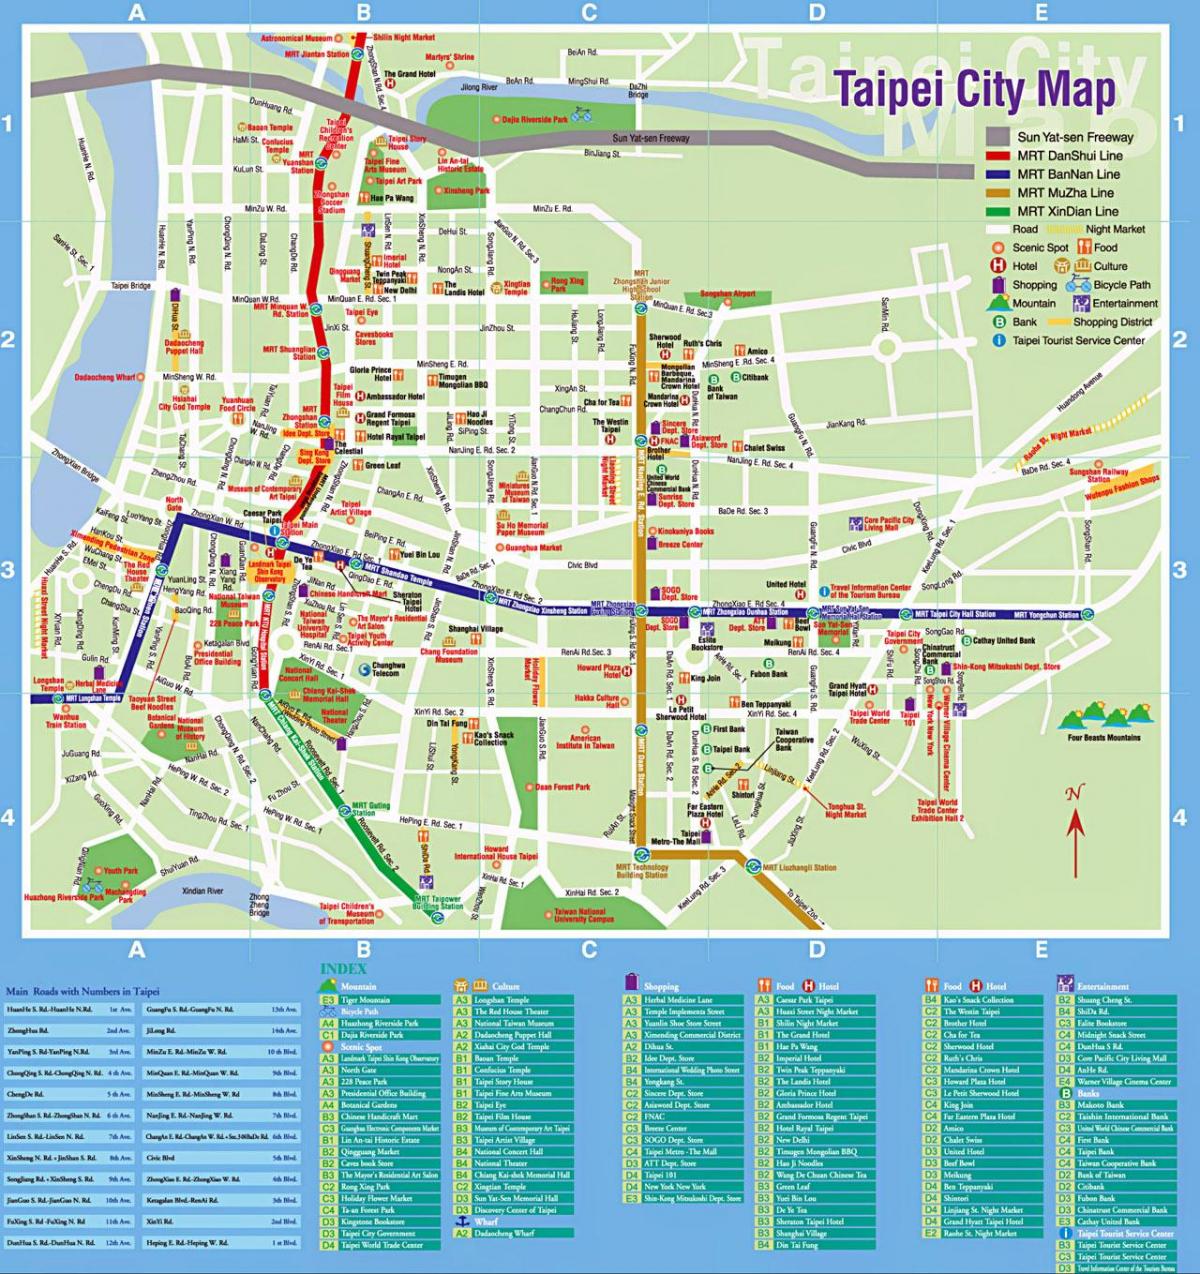 Taipei harta obiectivelor turistice